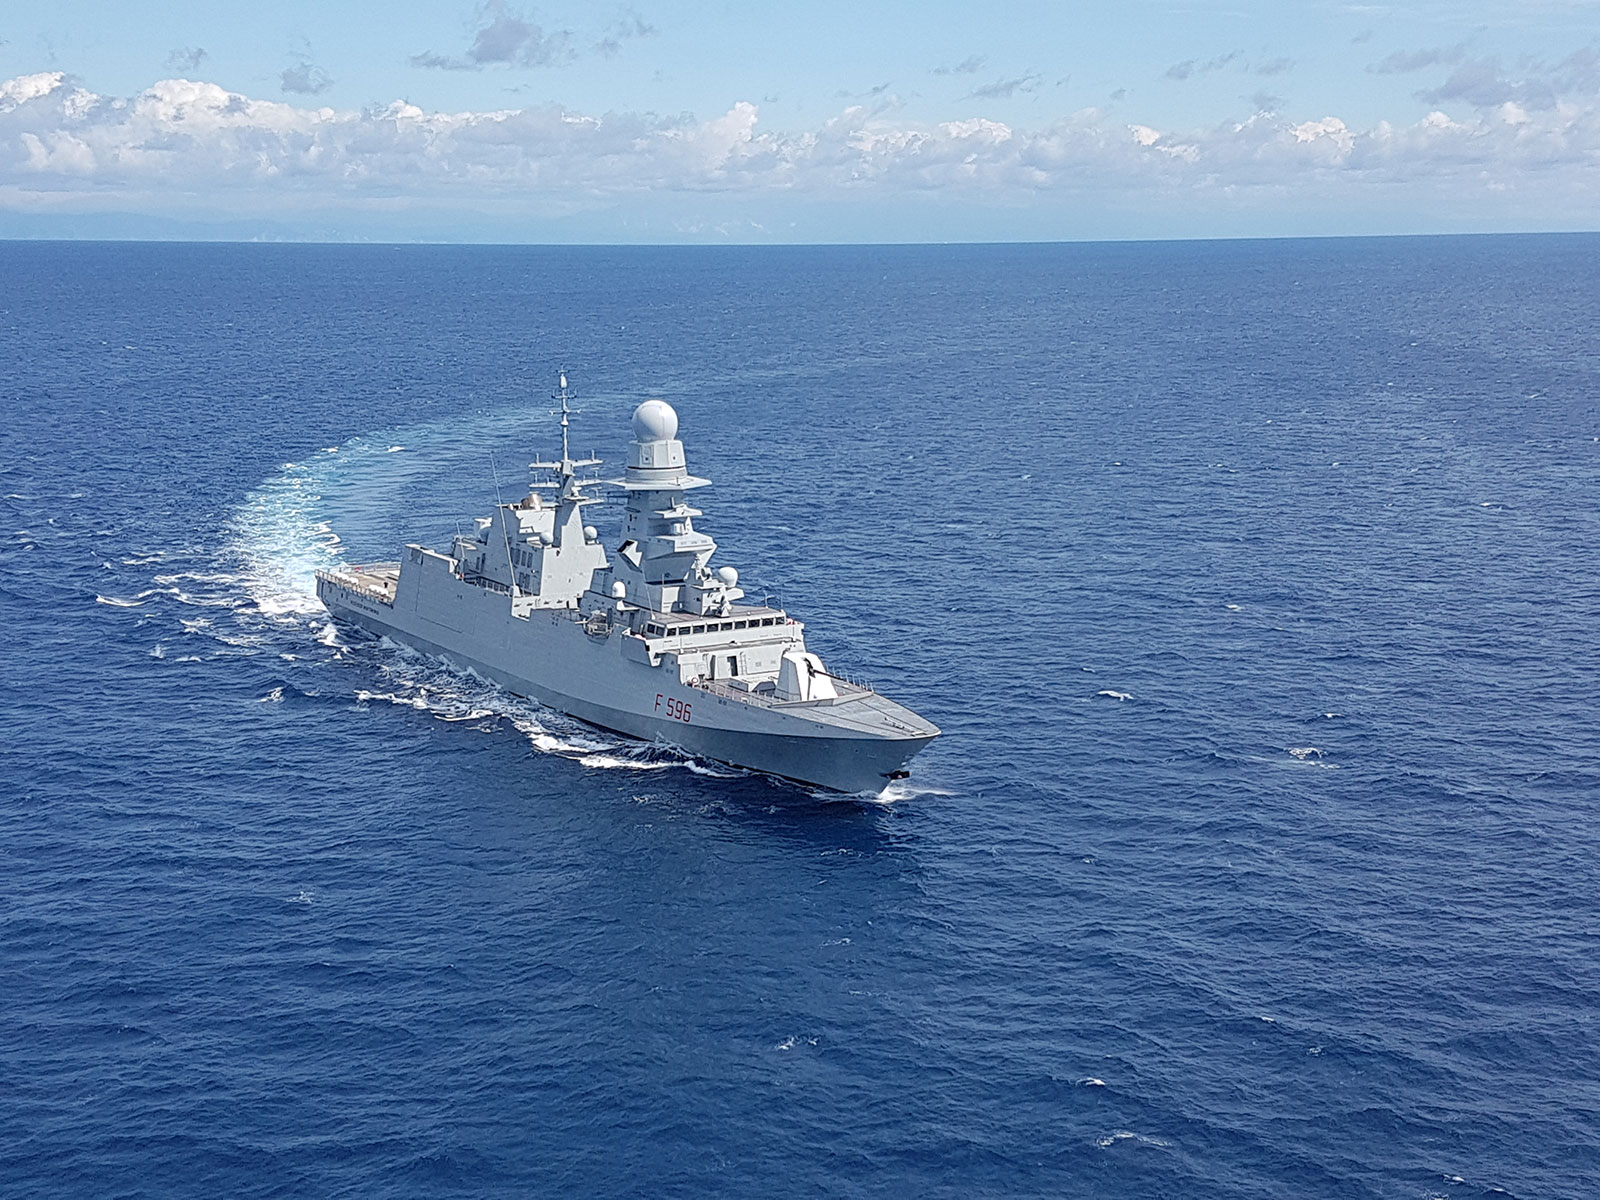 La fregata FREMM F596 "Federico Martinengo" si trova già nell'area mediorientale per l'operazione "Atalanta" e potrà garantire una presenza italiana fino all'avvio di "Aspides".